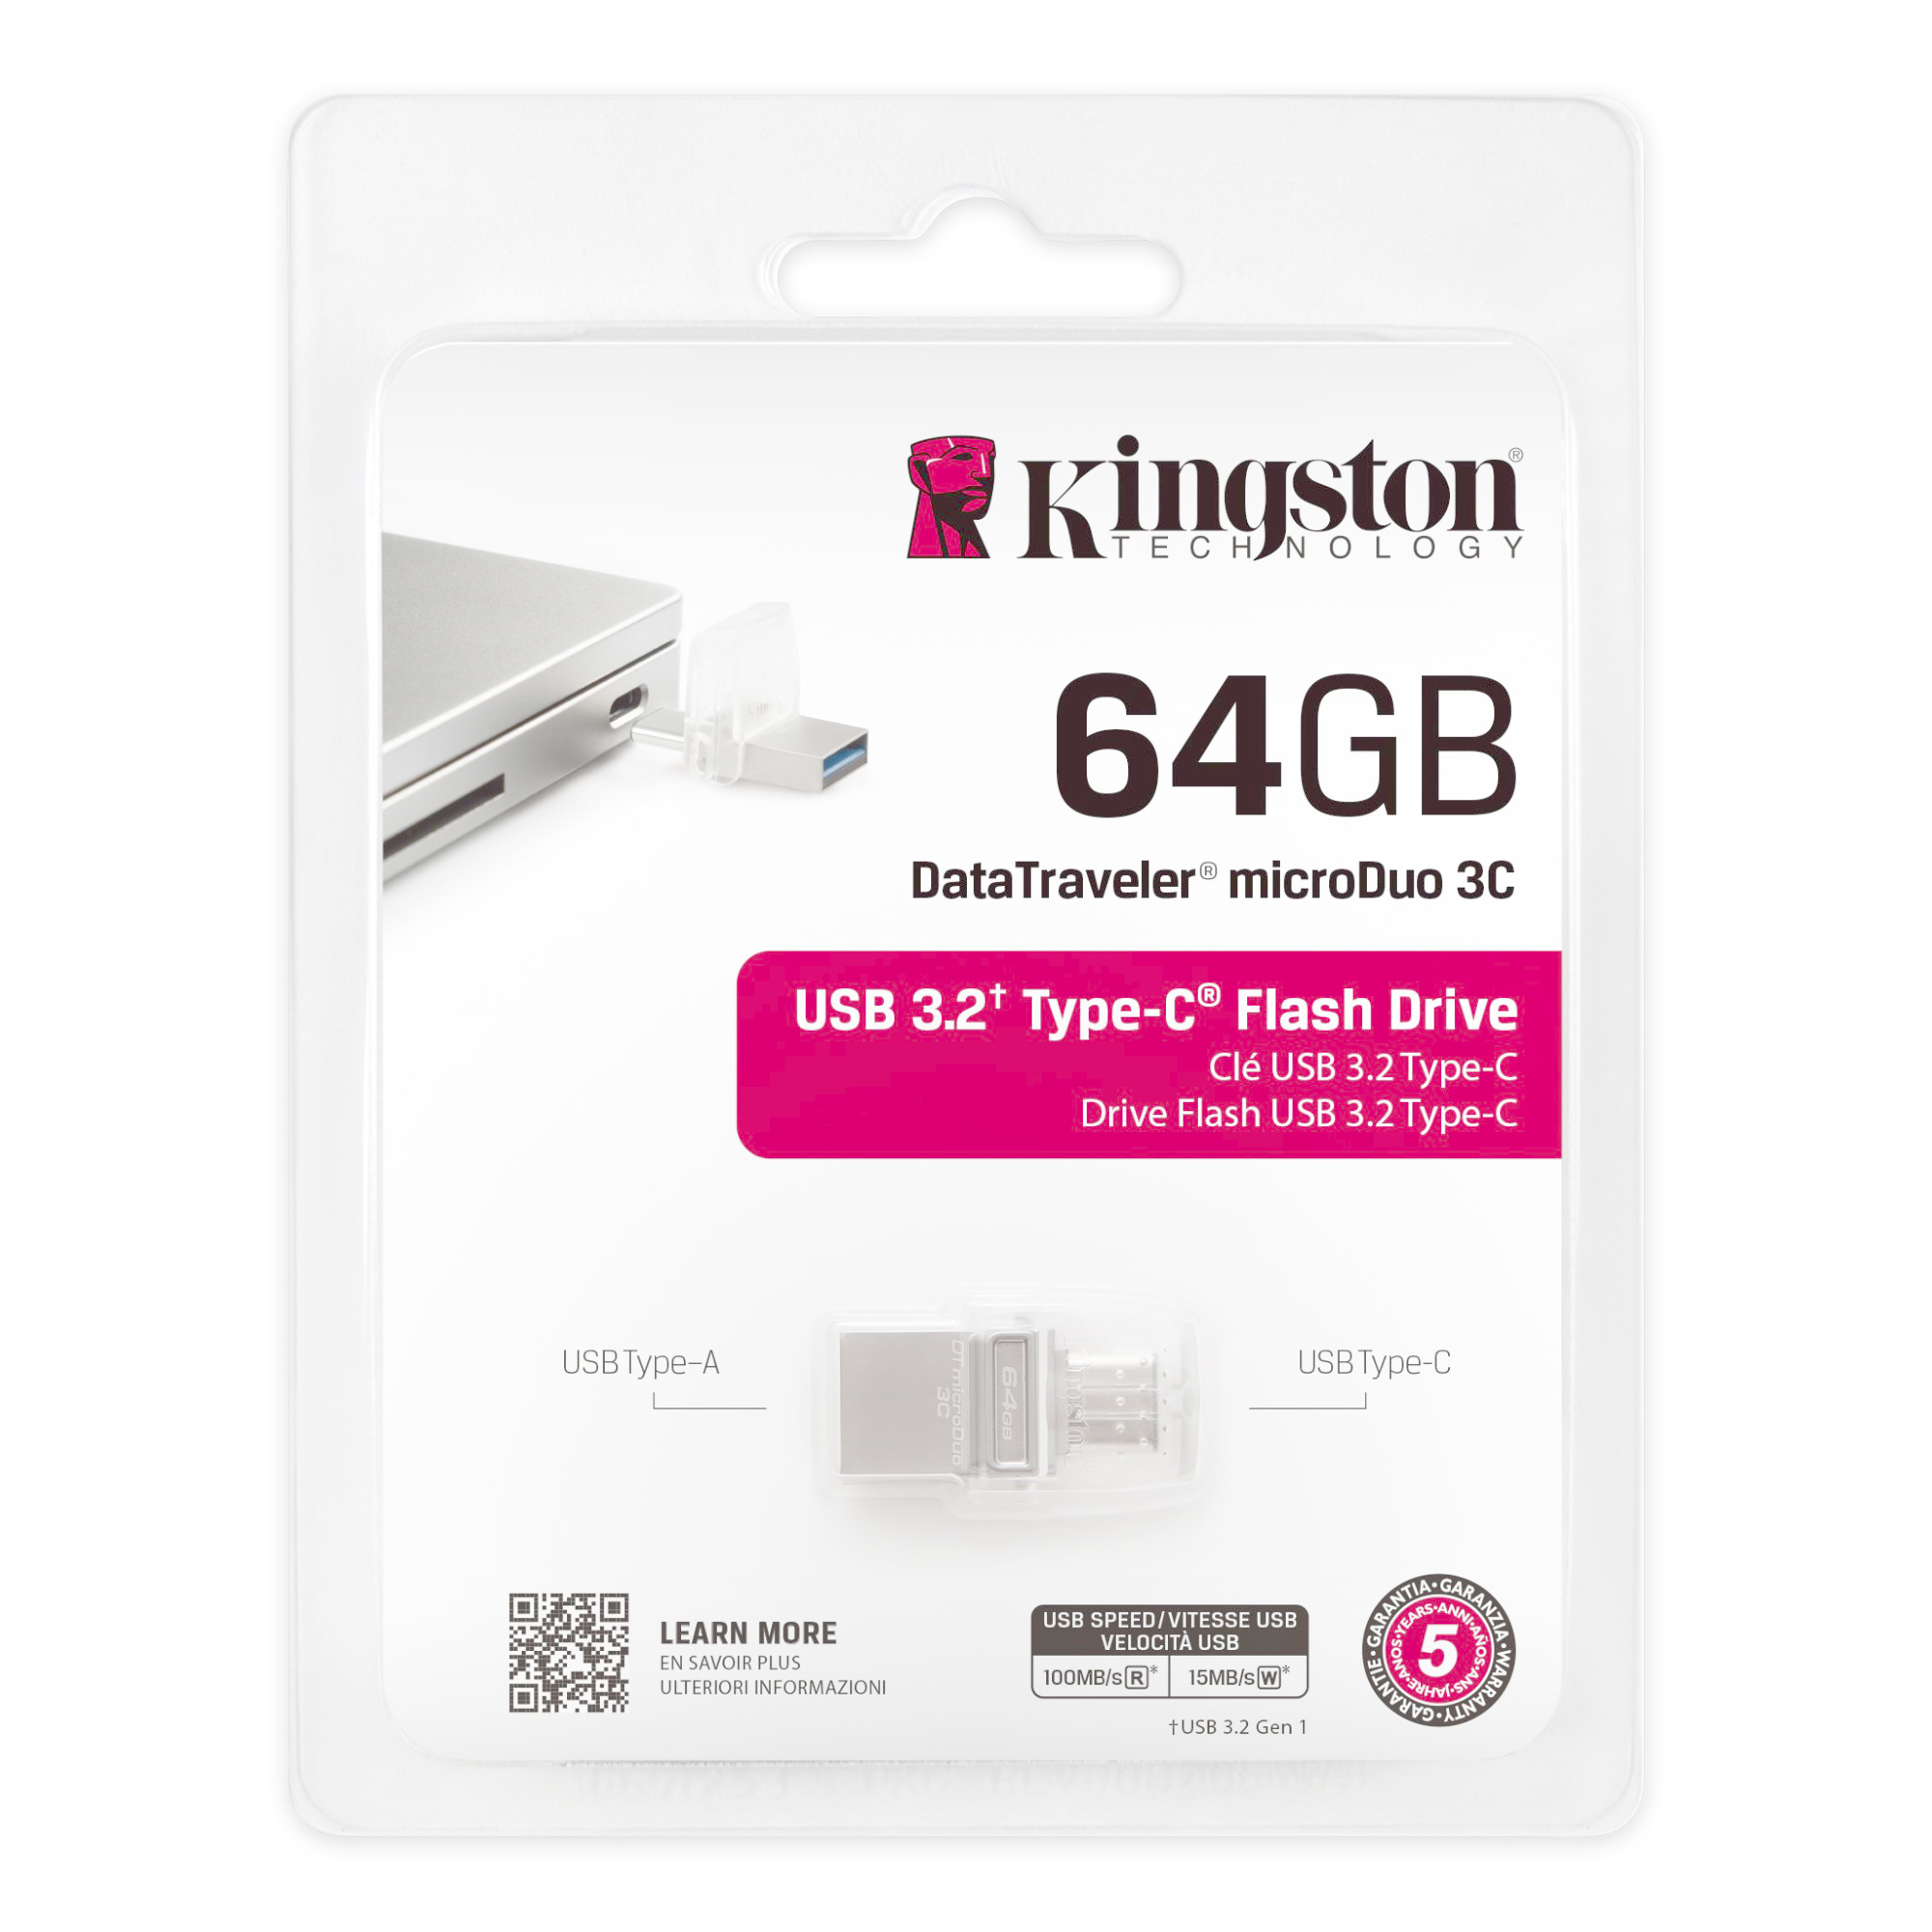 Clé USB Kingston Data Traveler DT 100 64 Gb 